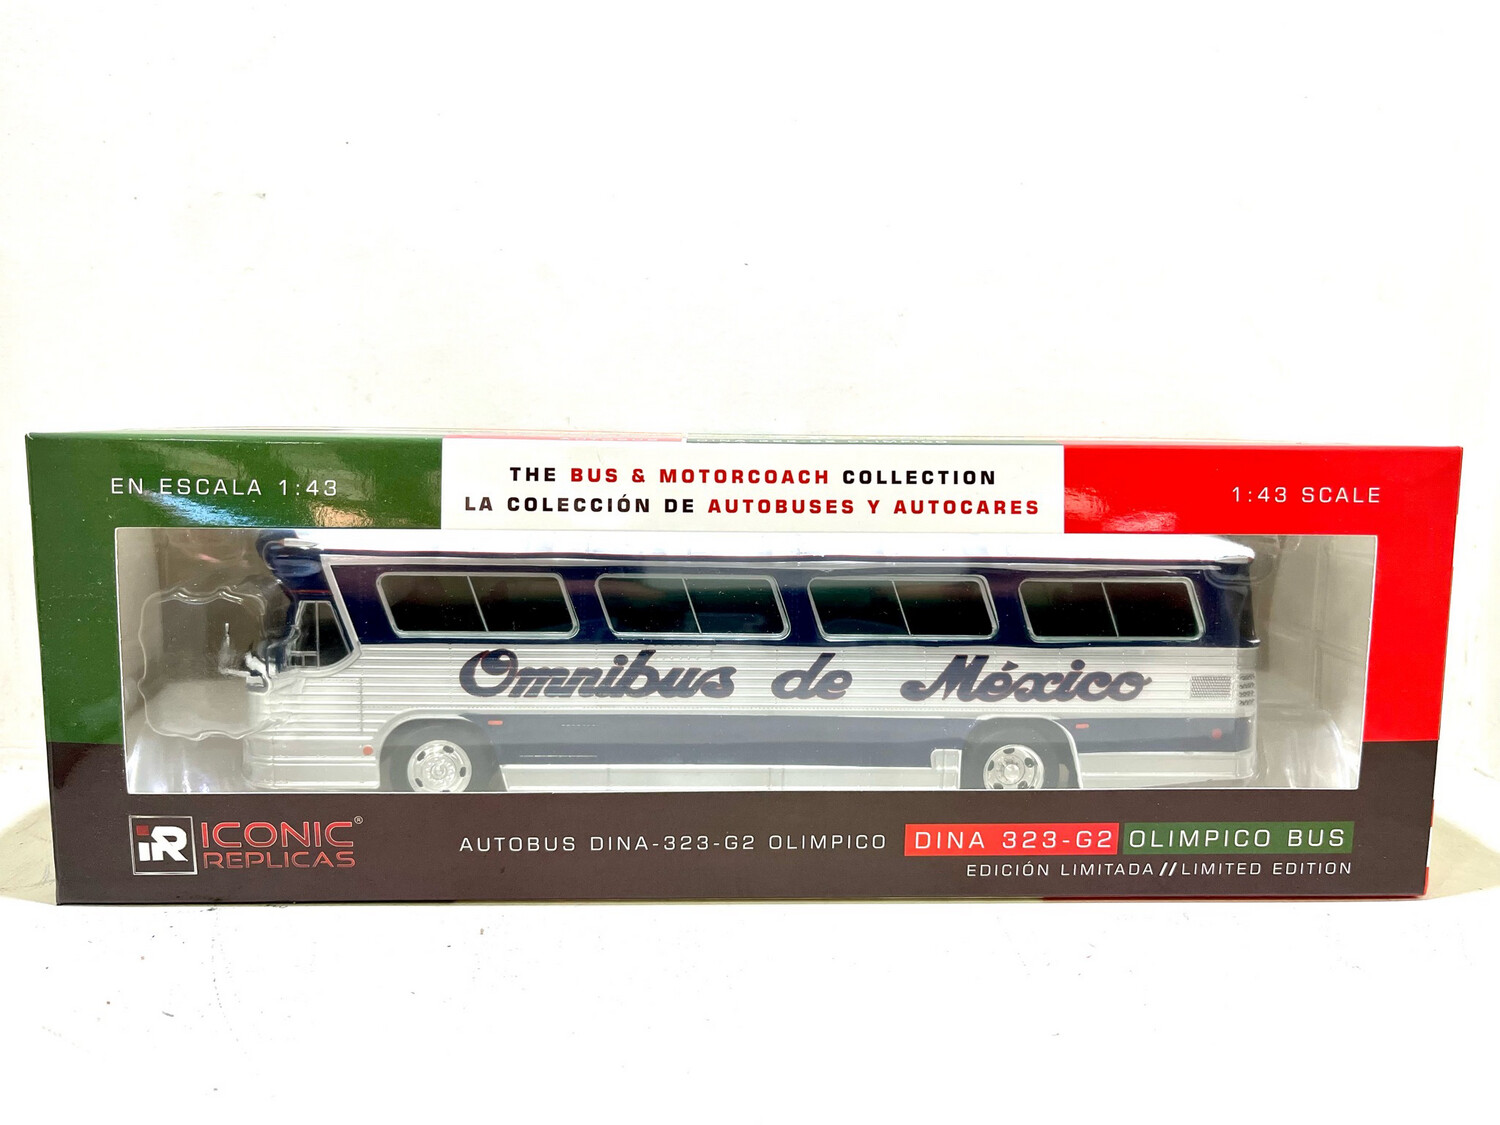 Autobus Dina Olimpico Omnibus de Mexico